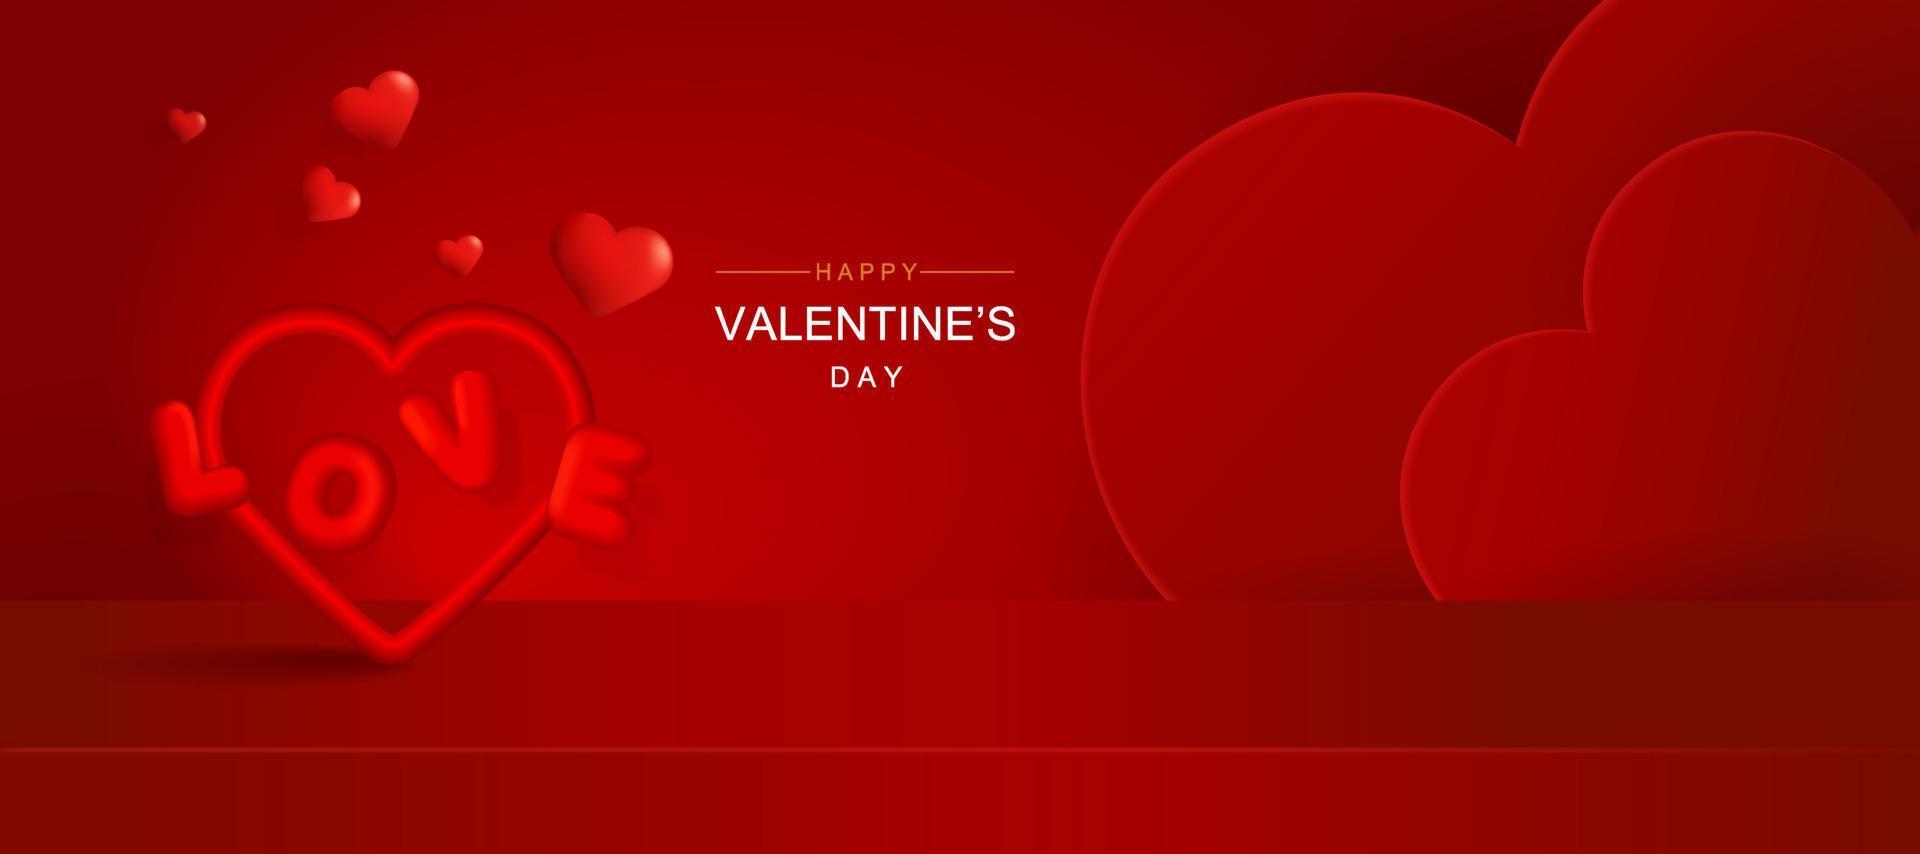 Valentijnsdag-sjabloon voor spandoek met 3D-harten, stralende lichten en podium. vector illustratie